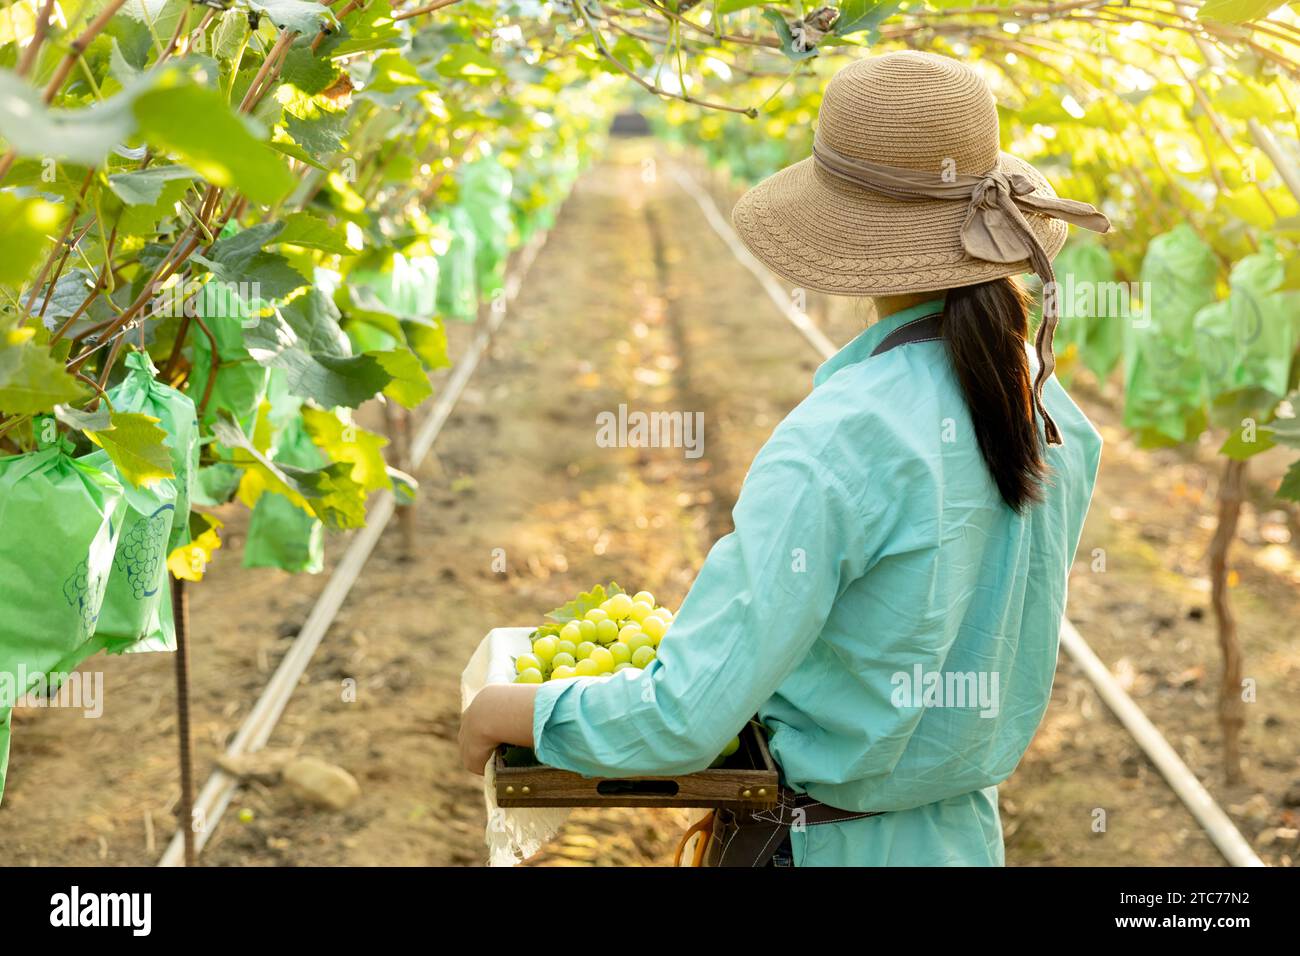 Vue arrière d'une jeune agricultrice regardant vers l'avant tout en tenant un panier rempli de raisins qu'elle a récoltés Banque D'Images